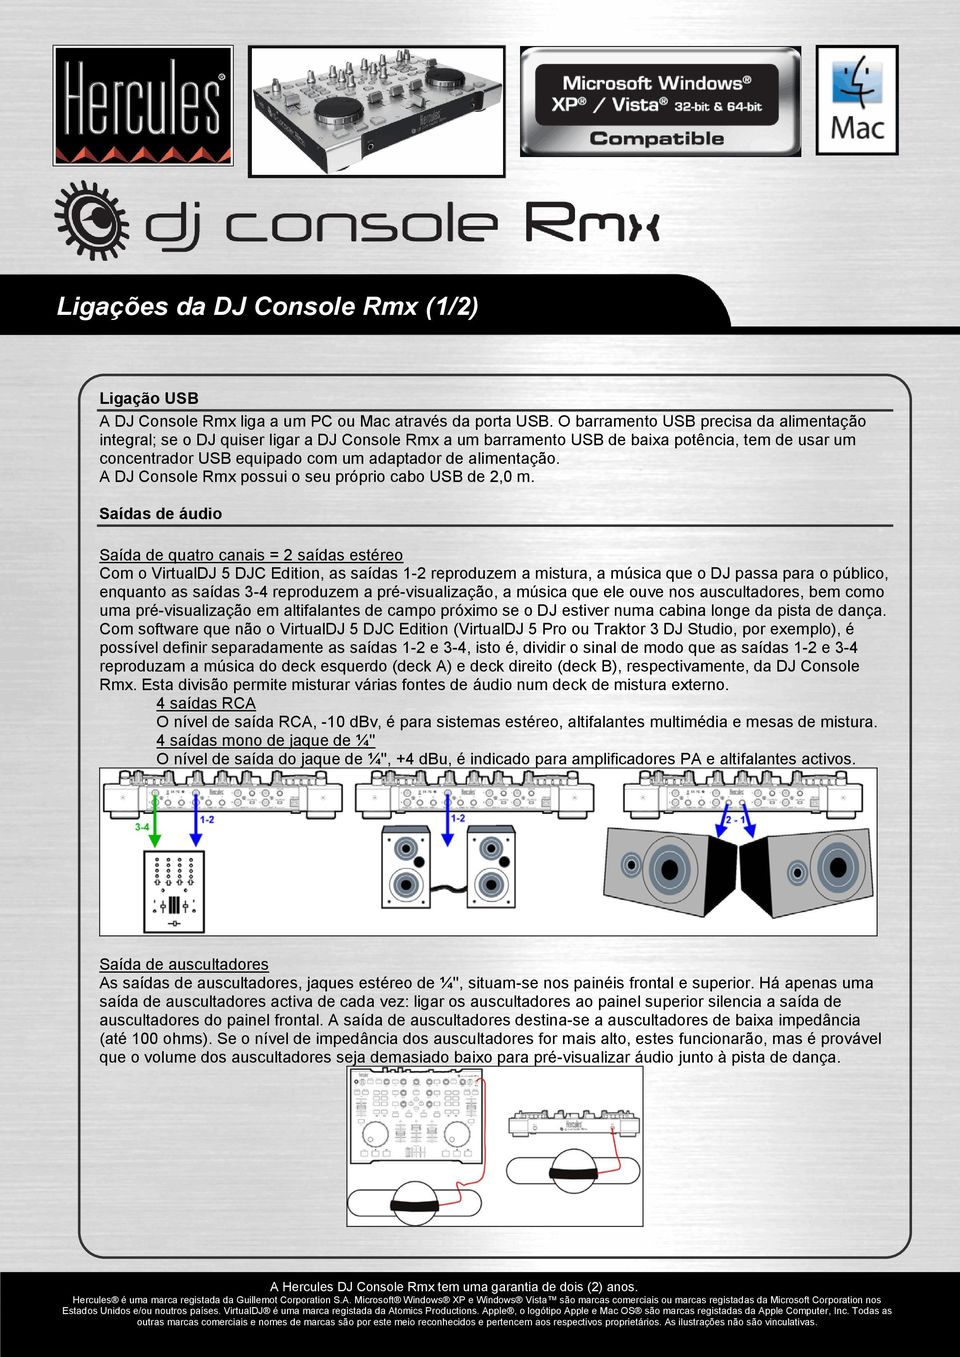 A DJ Console Rmx possui o seu próprio cabo USB de 2,0 m.